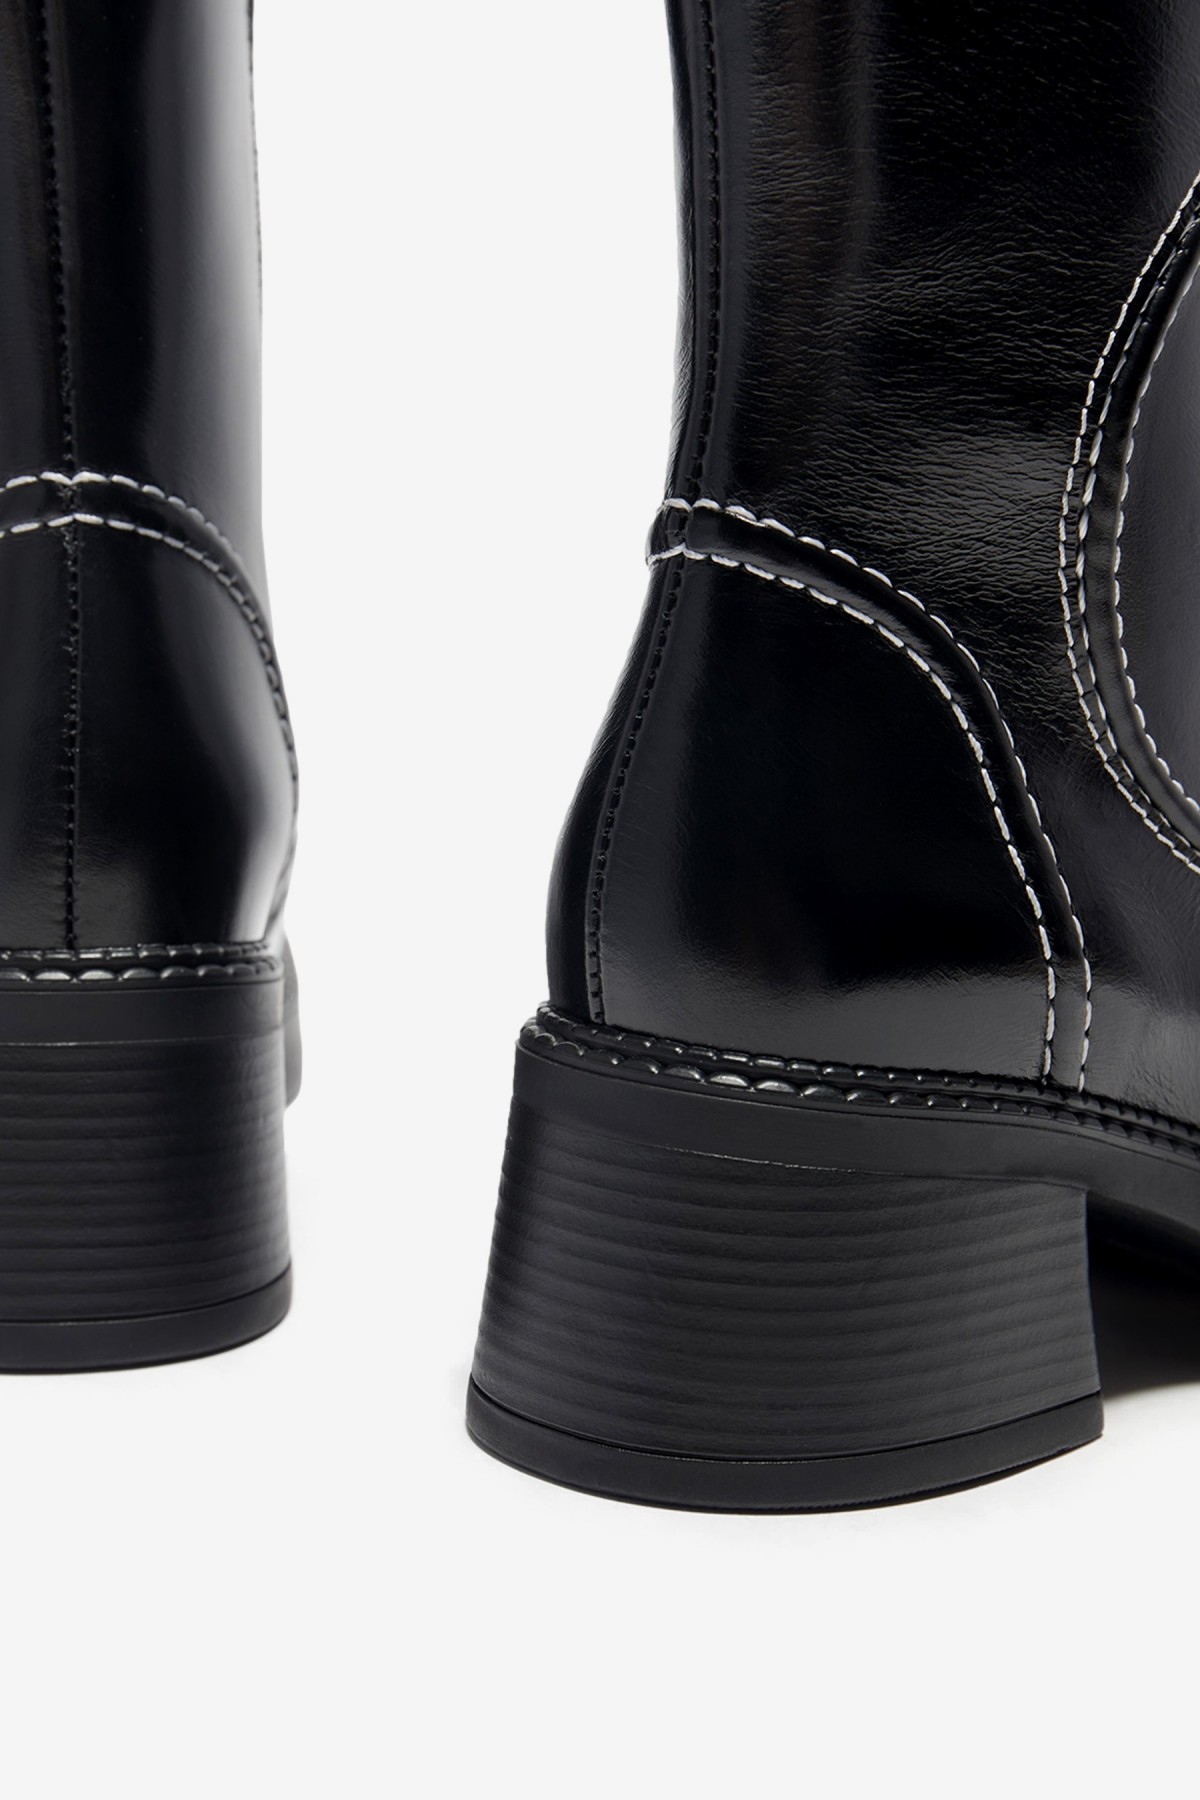 Miista Malene Ankle Boots in Black